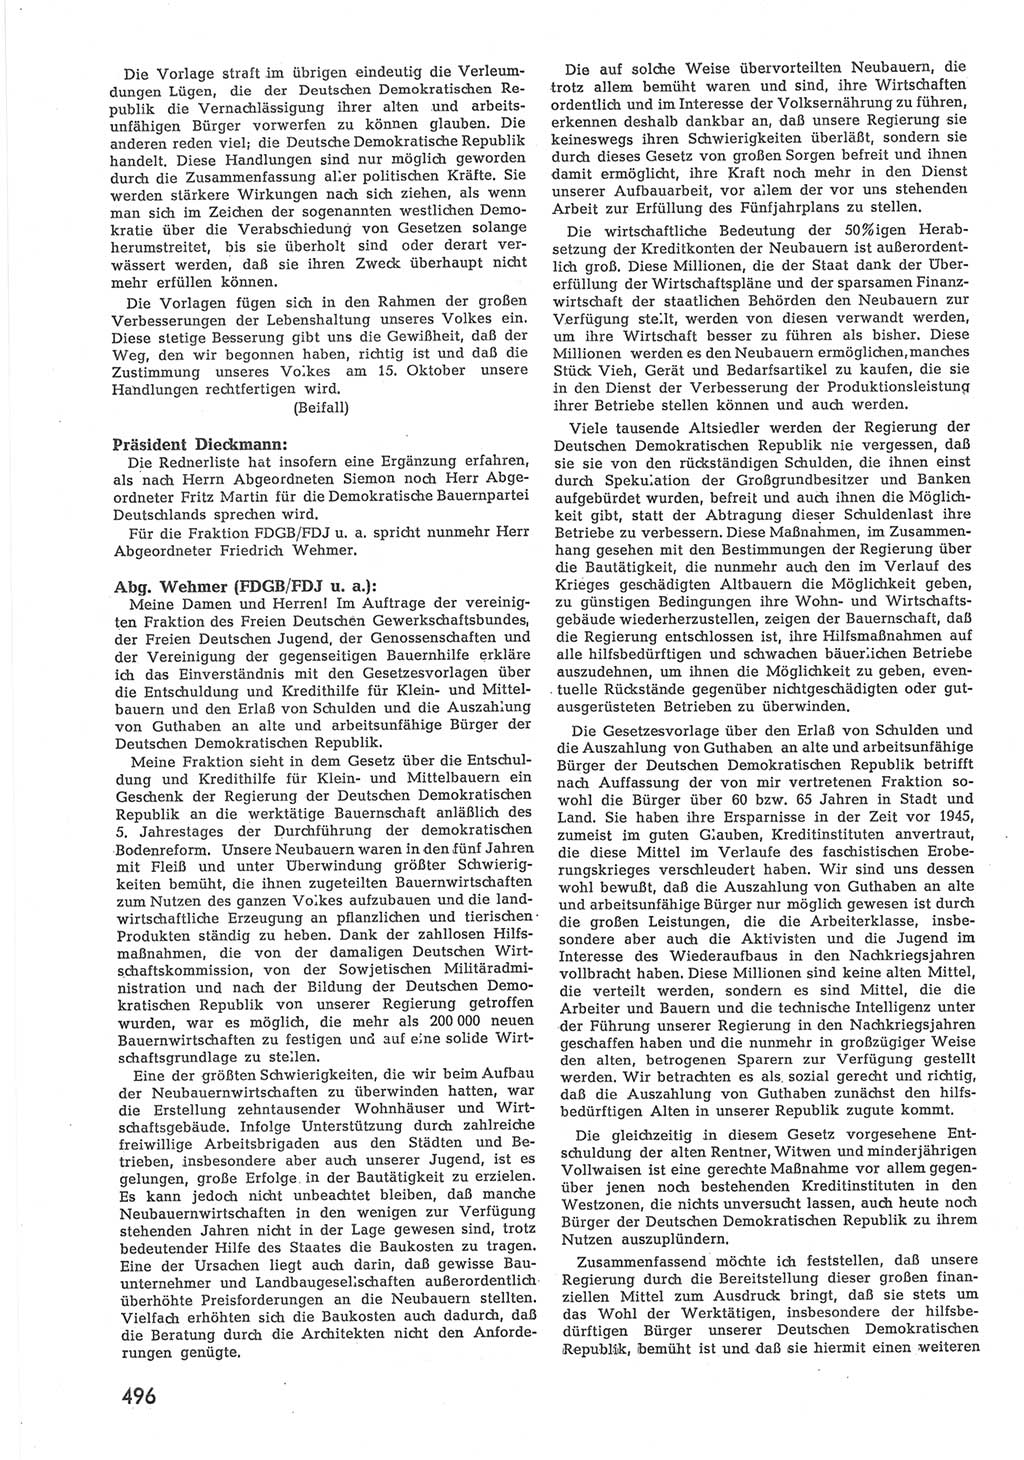 Provisorische Volkskammer (VK) der Deutschen Demokratischen Republik (DDR) 1949-1950, Dokument 514 (Prov. VK DDR 1949-1950, Dok. 514)